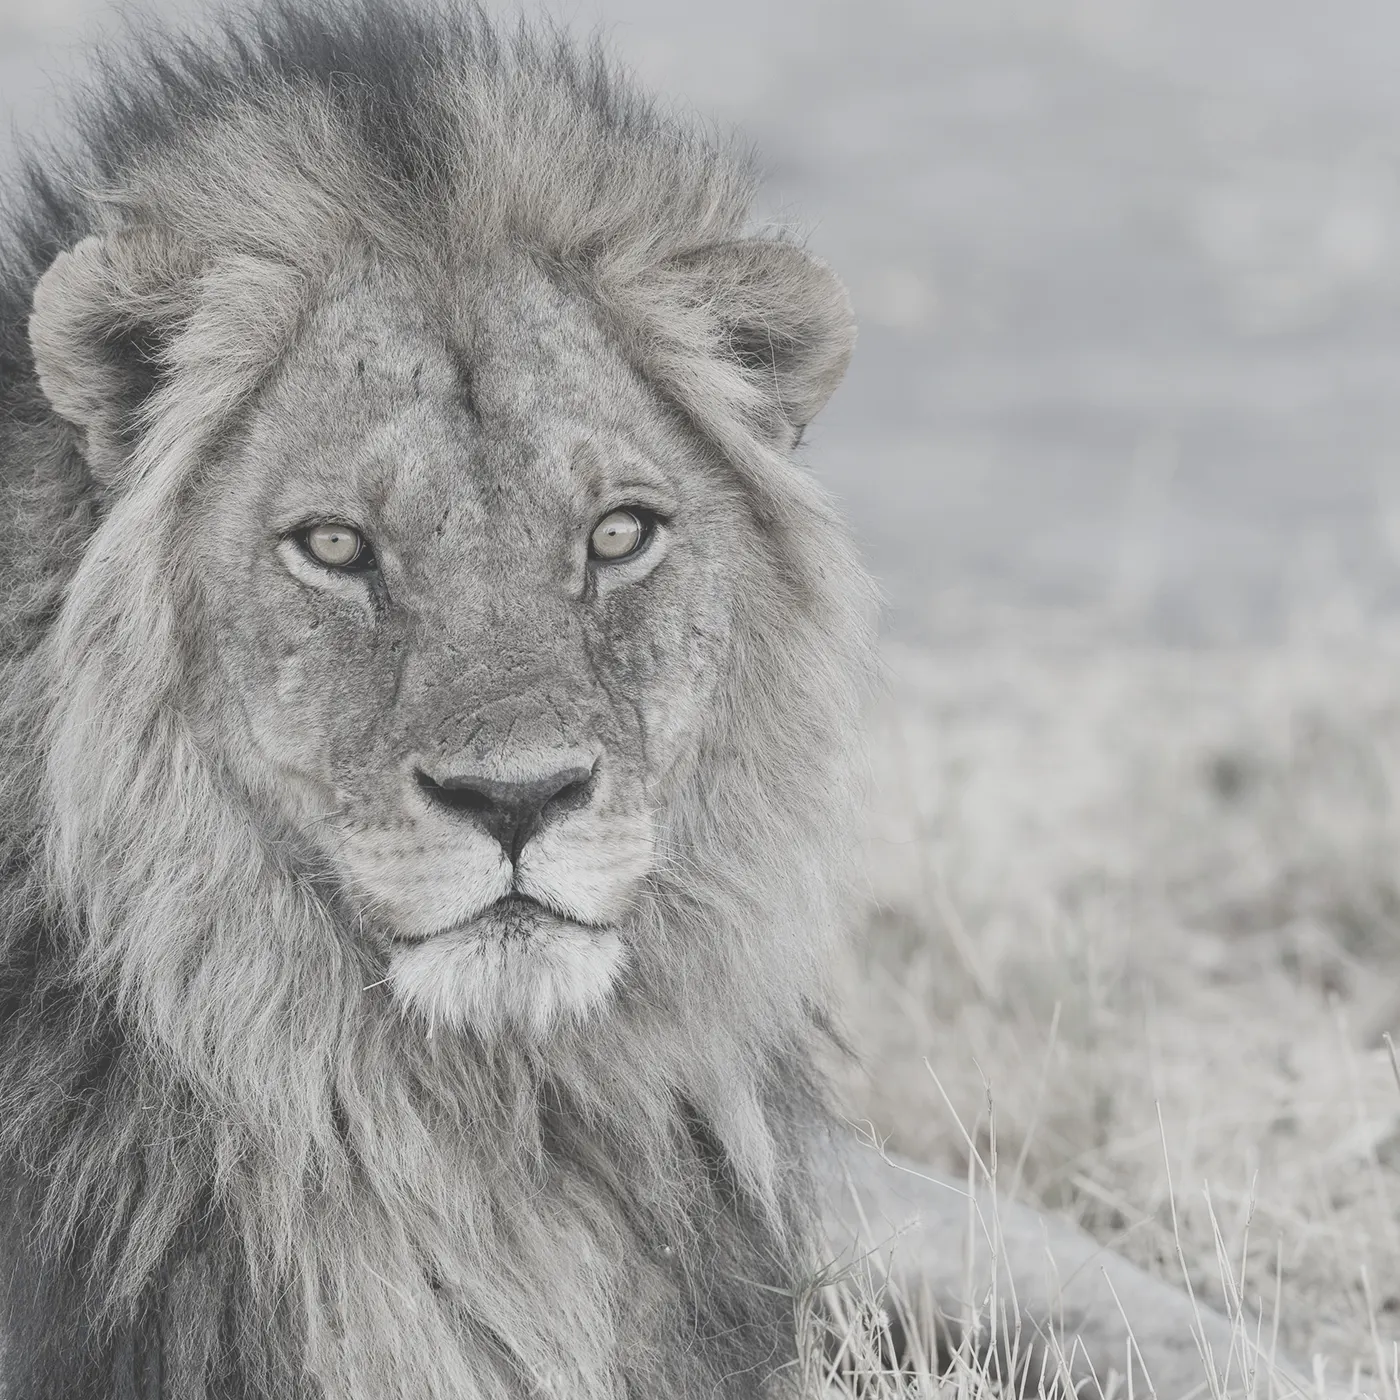 Portraitfotografie eines ausgewachsenen Löwen